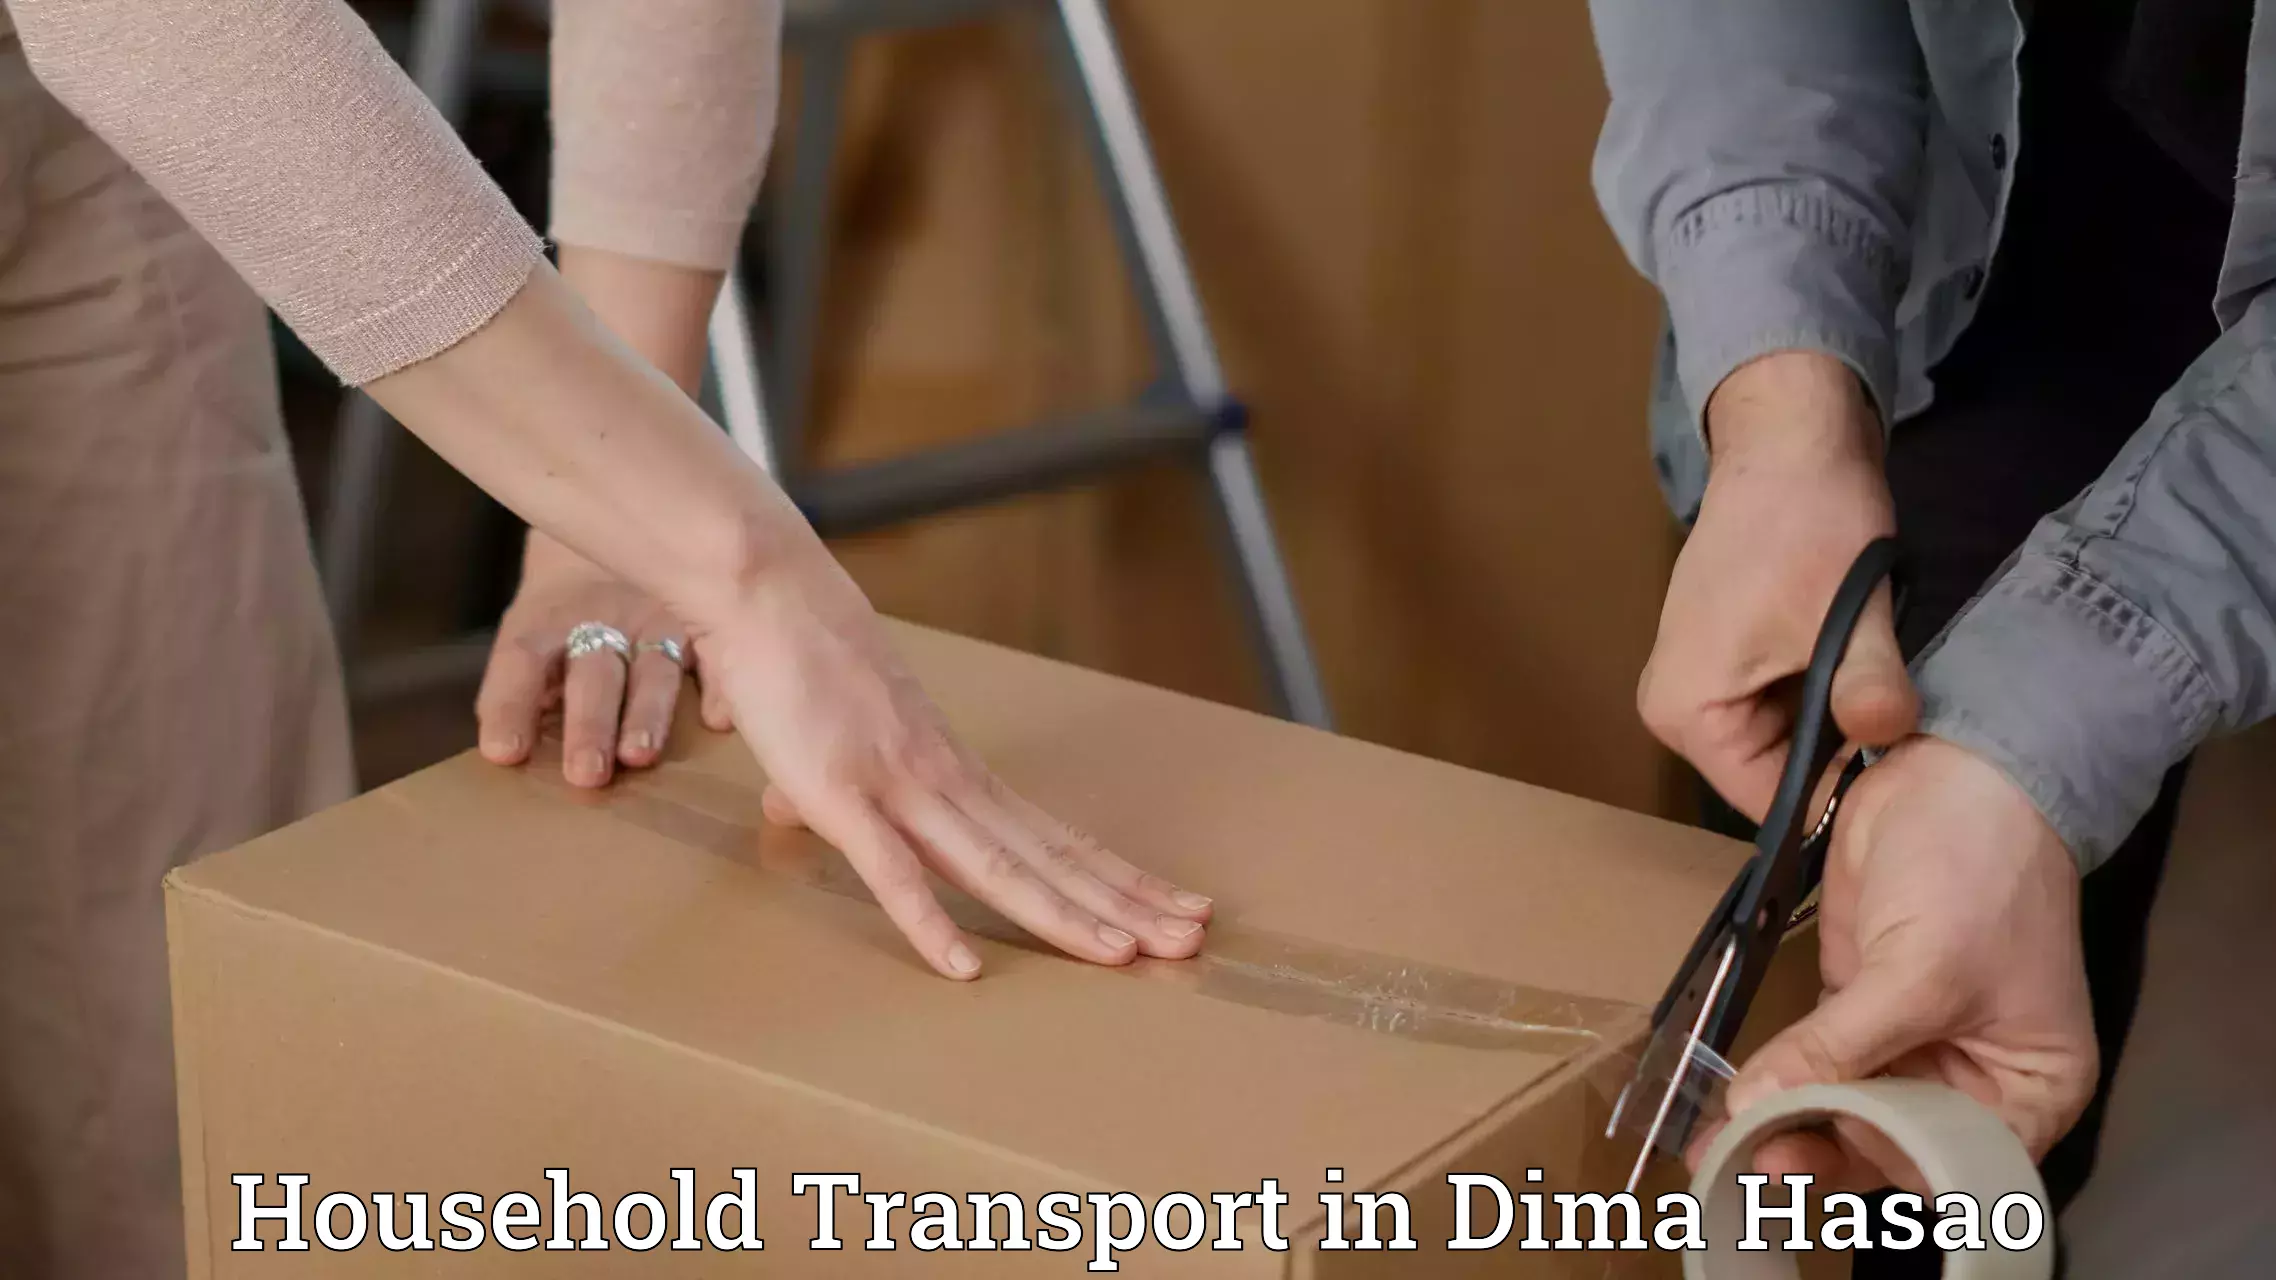 Furniture transport experts in Dima Hasao